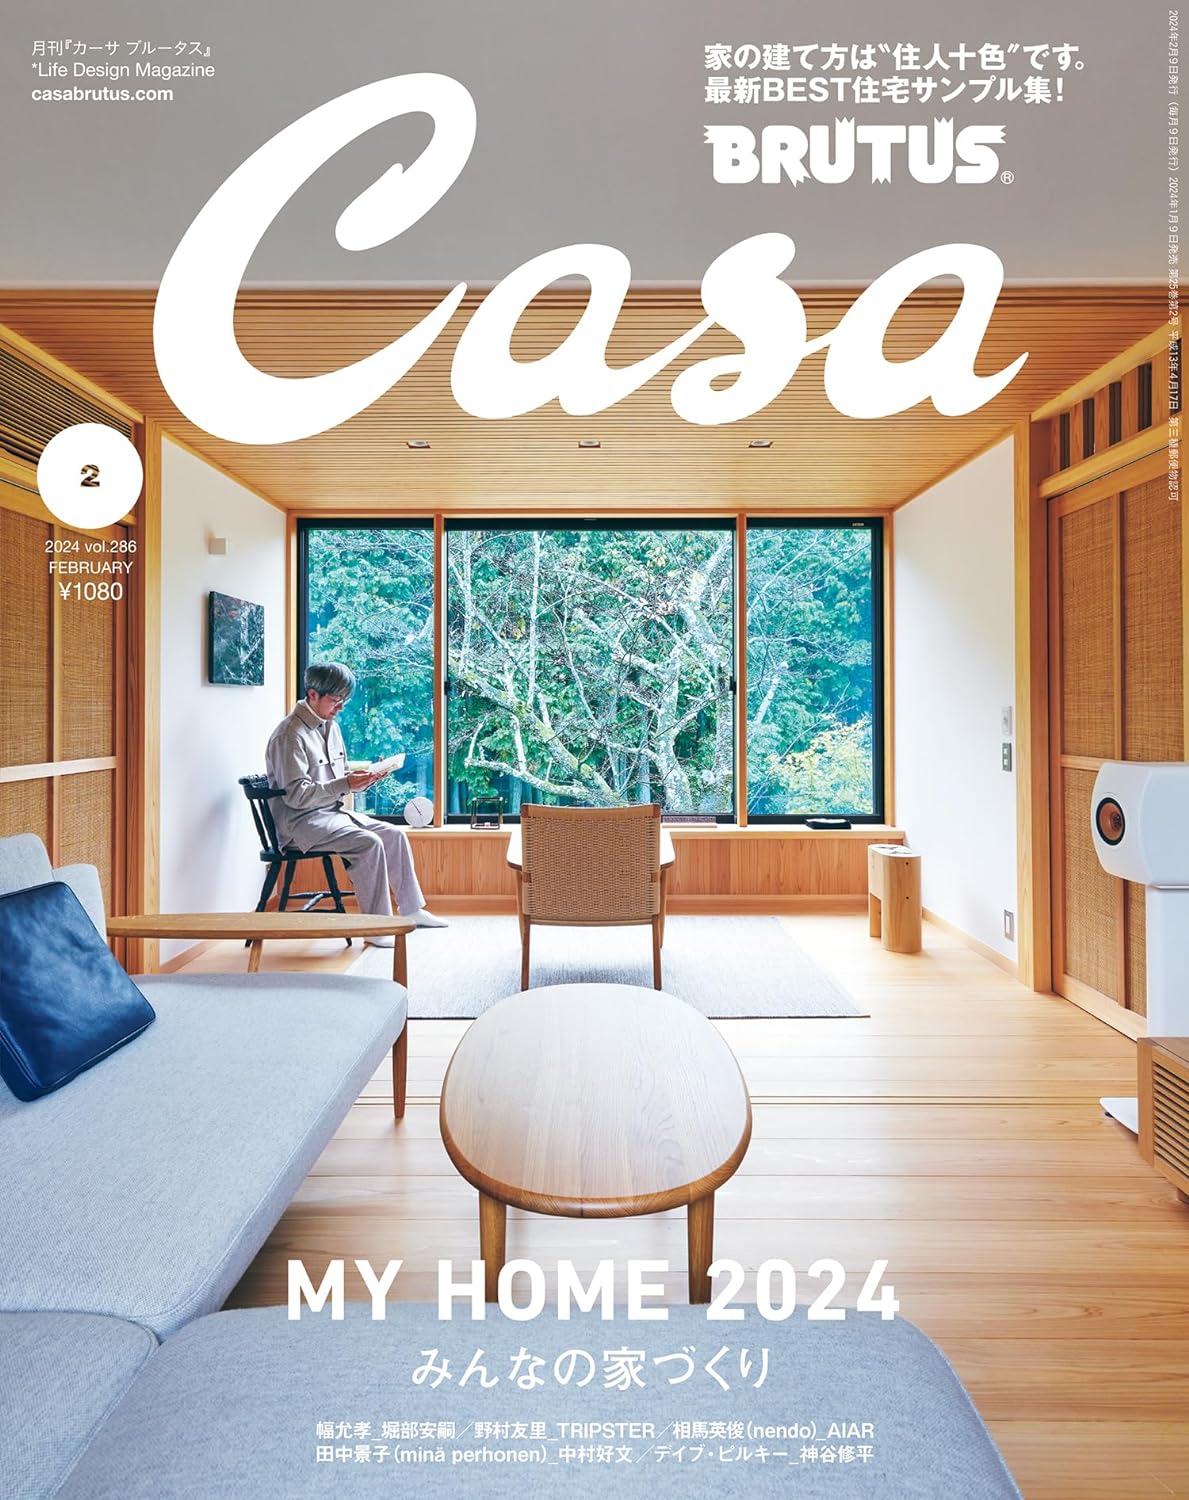 Casa BRUTUS(カ-サ ブル-タス) 2024年 02月號[みんなの家づくり]